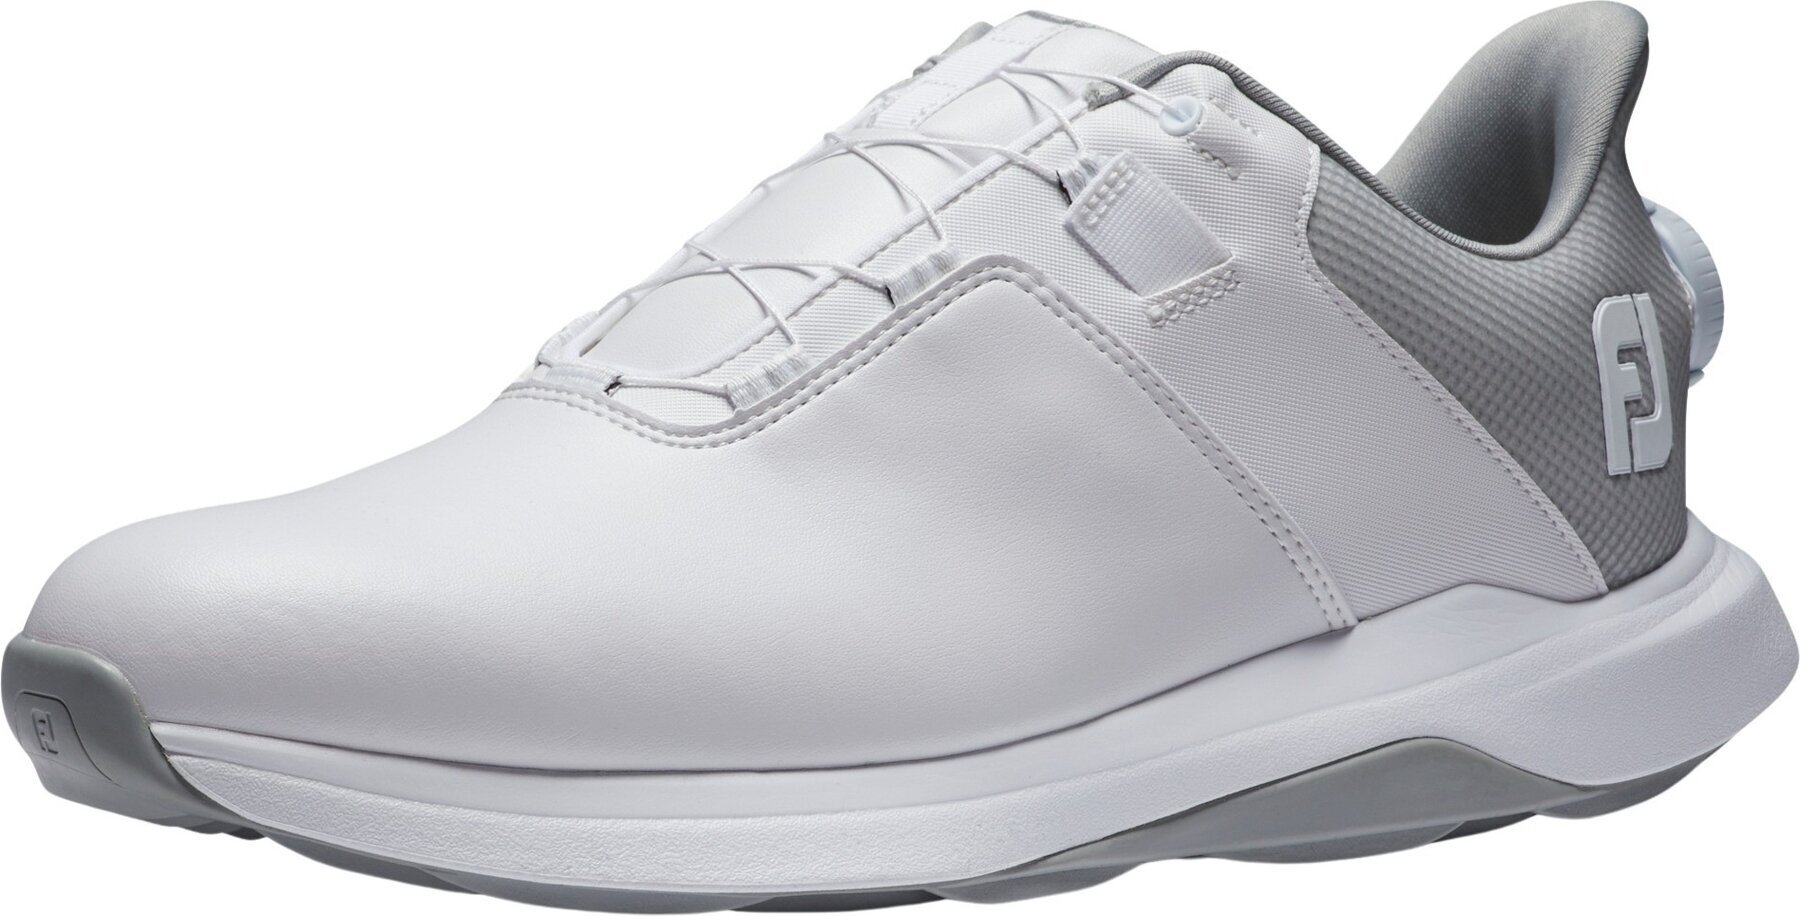 Chaussures de golf pour hommes Footjoy ProLite Mens Golf Shoes White/White/Grey 44,5